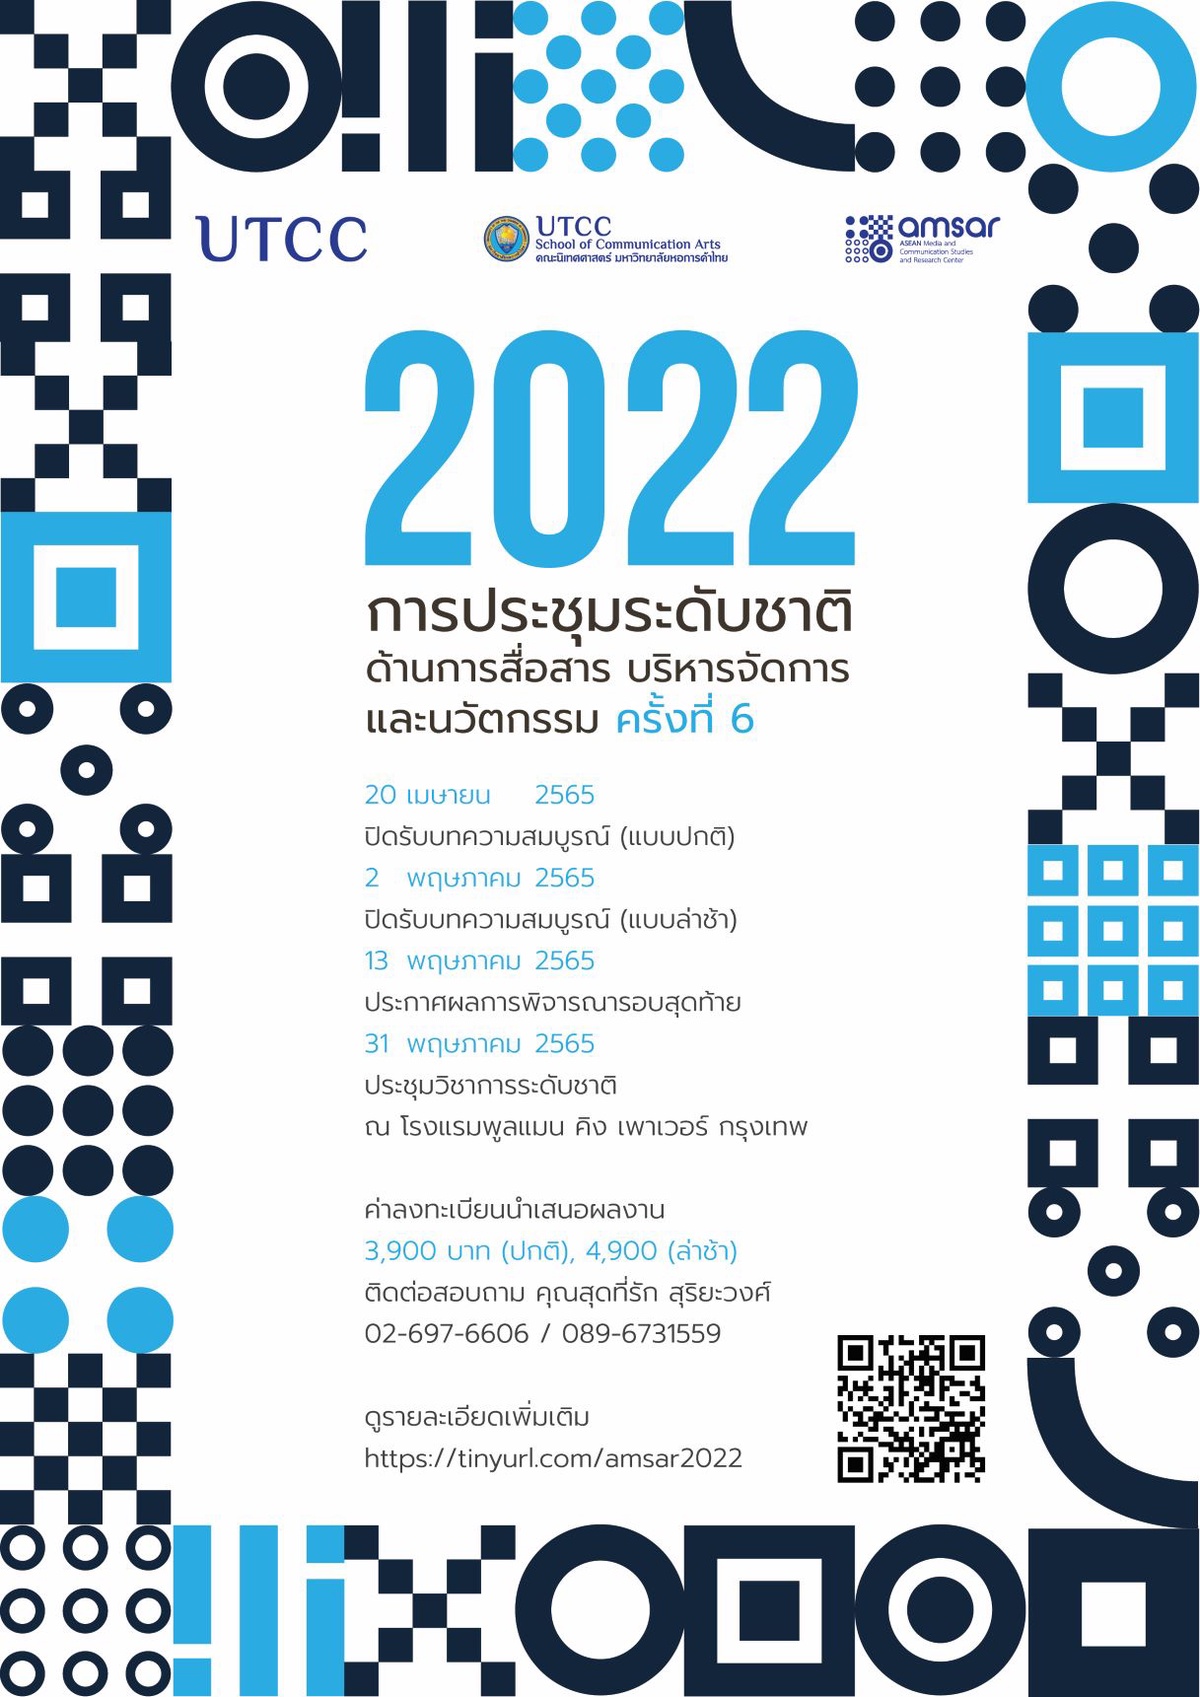 ขอเชิญส่งบทความในงานประชุมวิชาการระดับชาติด้านการสื่อสาร การบริหารจัดการ และนวัตกรรม ครั้งที่ 6 ปี 2022